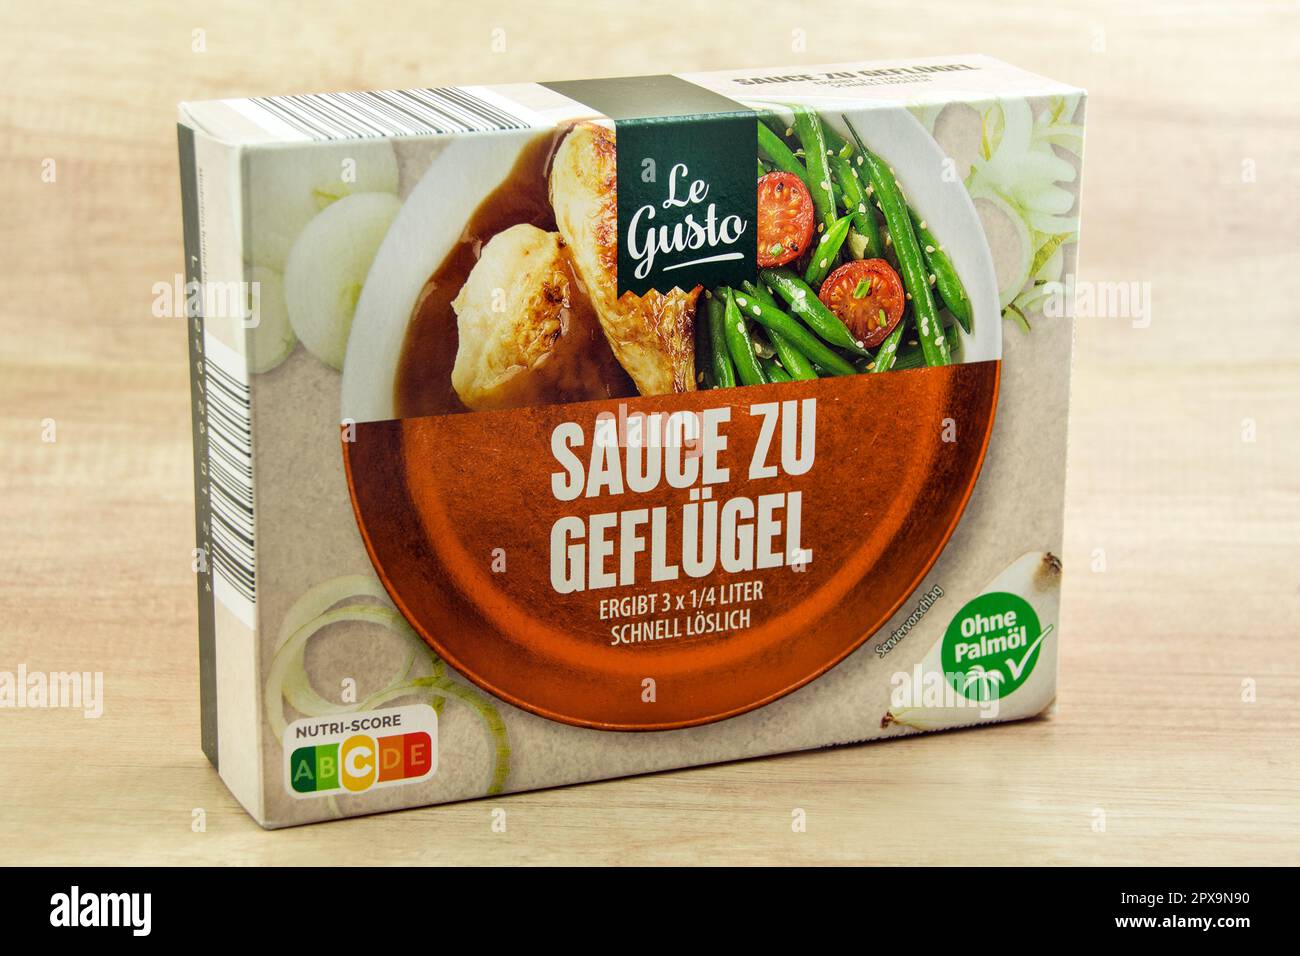 Le Gusto Sauce zu Geflügel auf Holz Hintergrund Stock Photo